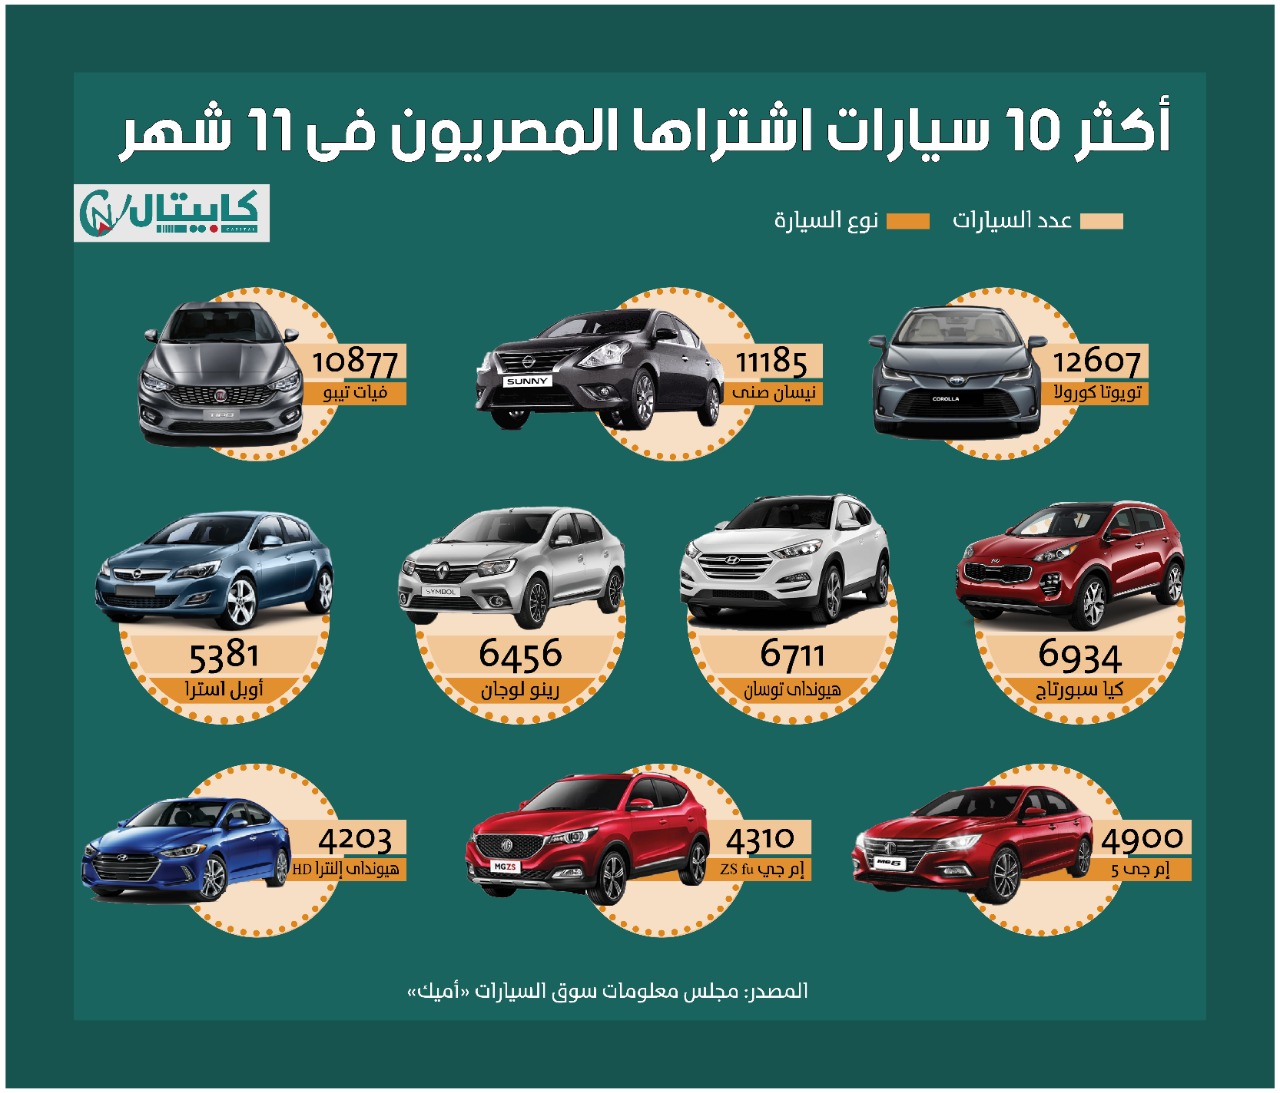 أكثر 10 سيارات اشتراها المصريون فى 2020